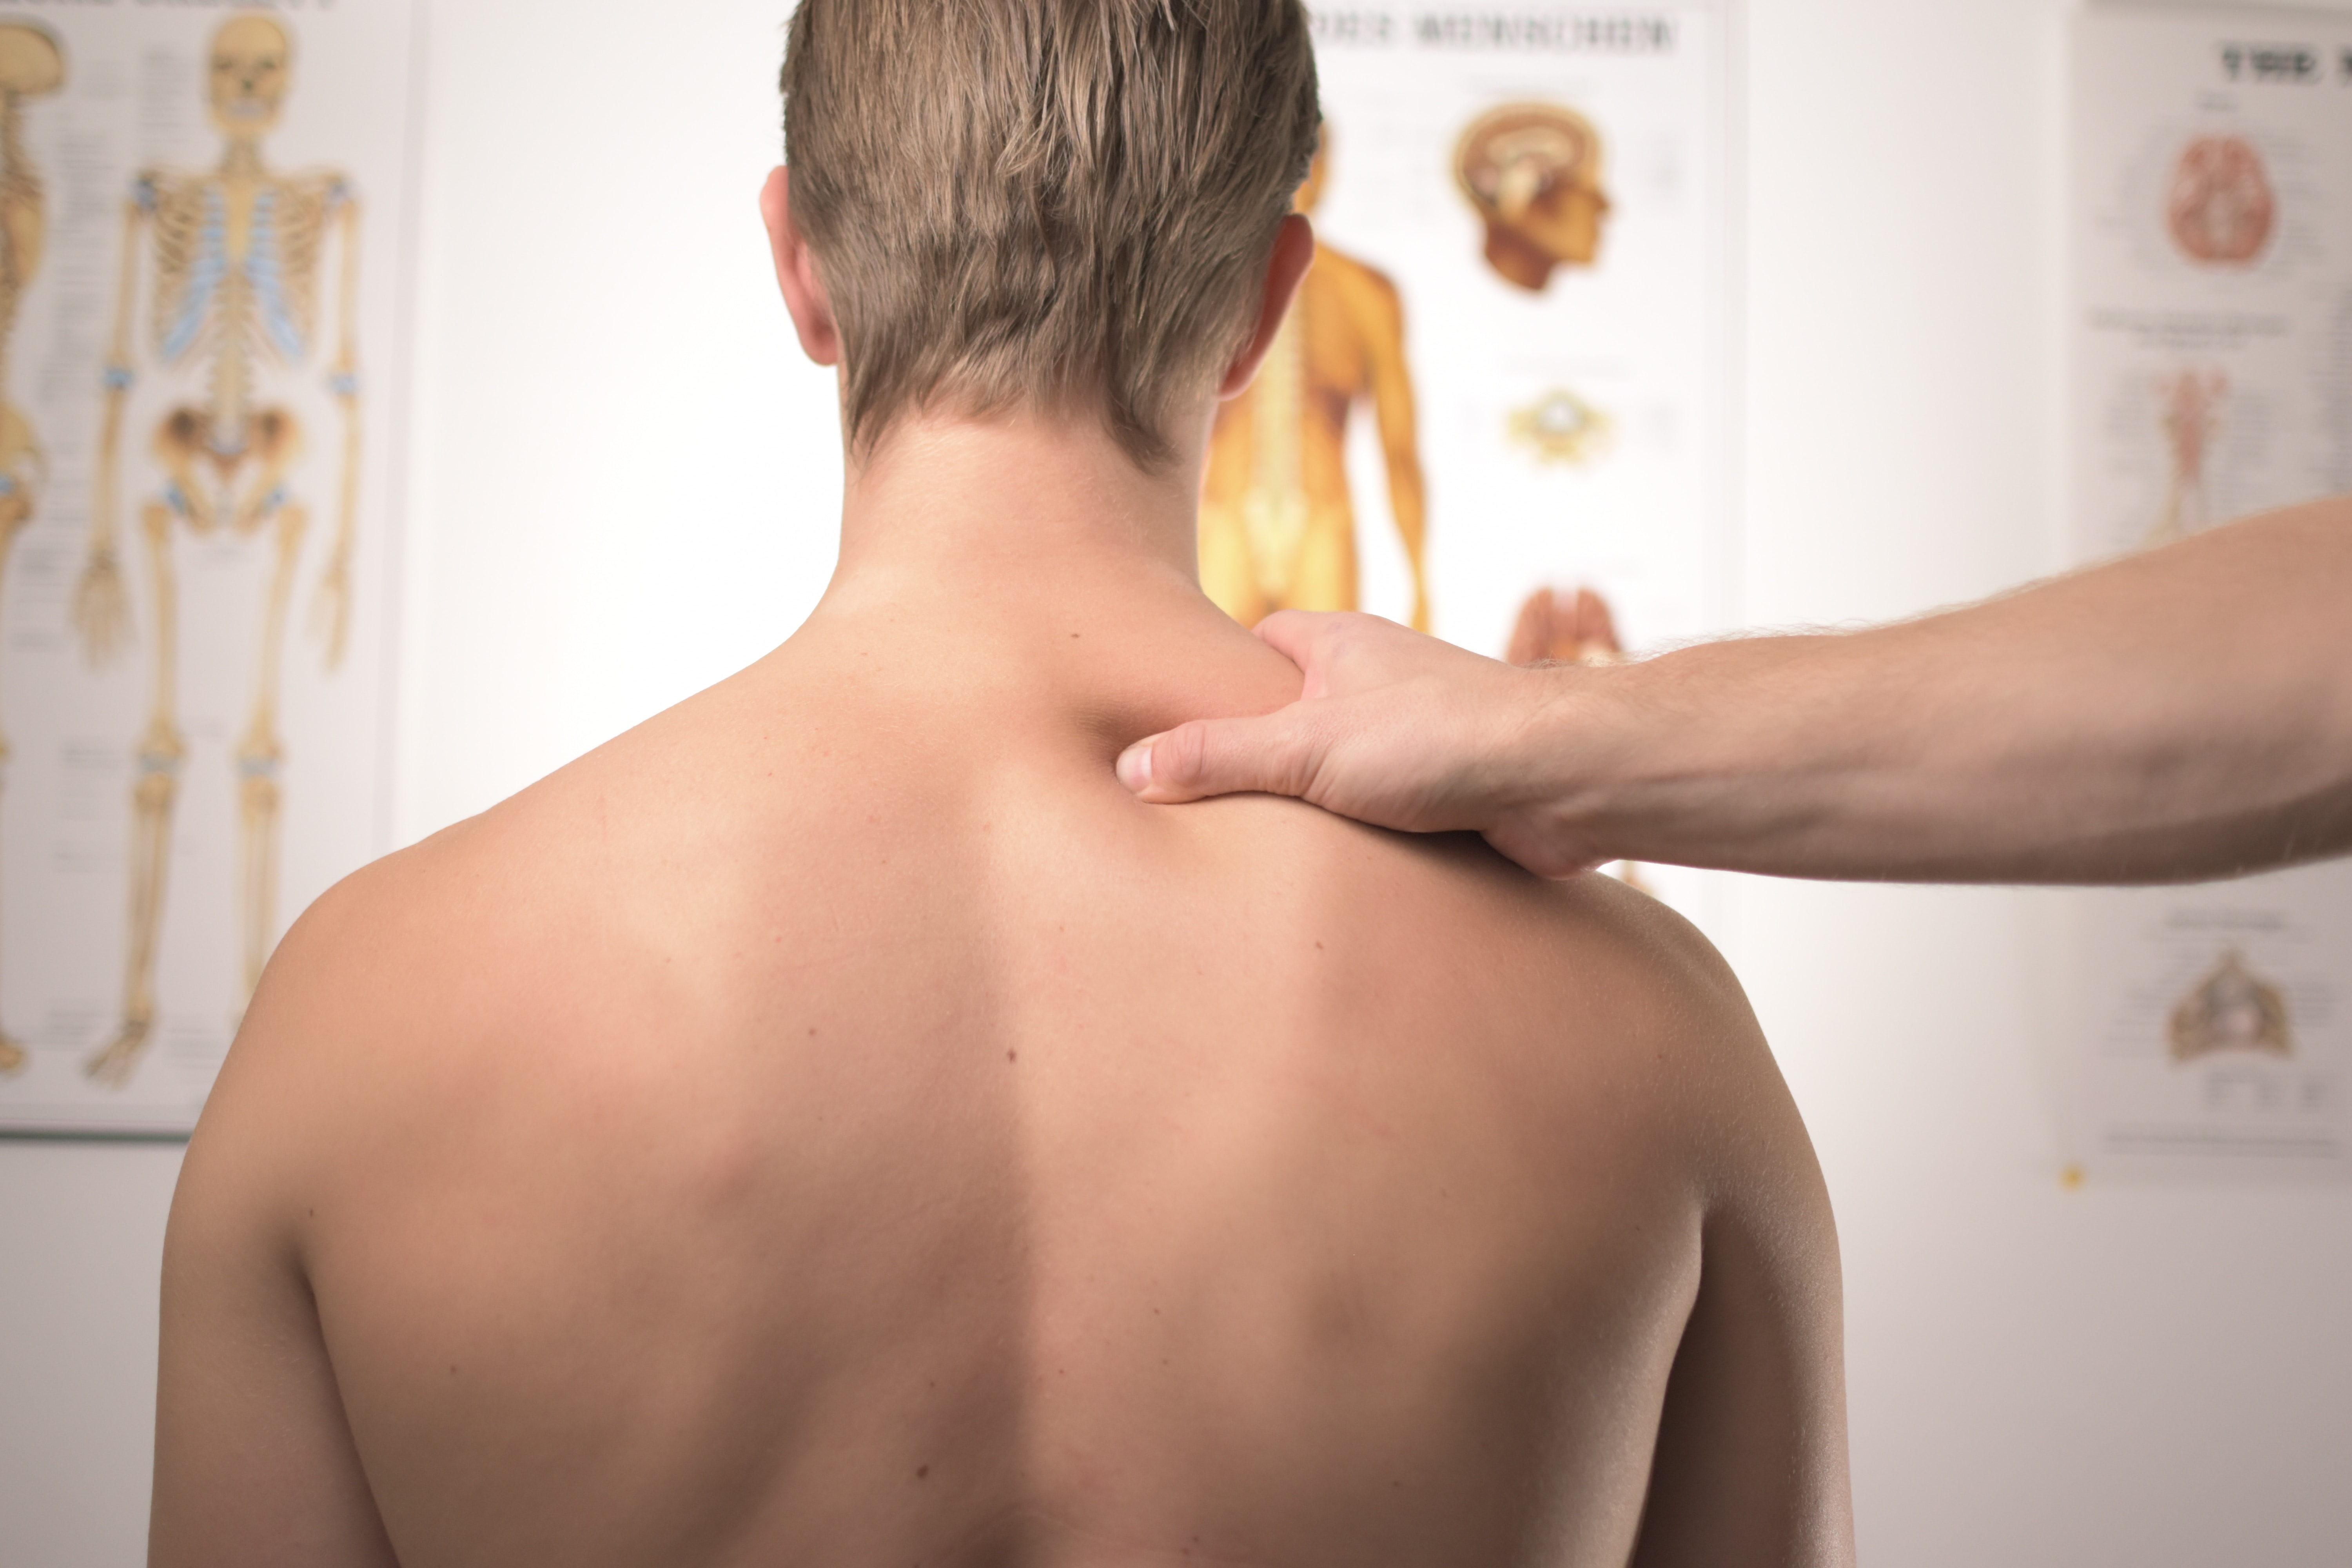 https://www.melbournesportsphysiotherapy.com.au/static/uploads/images/neck-and-back-pain-wfkiysliksjr.jpg